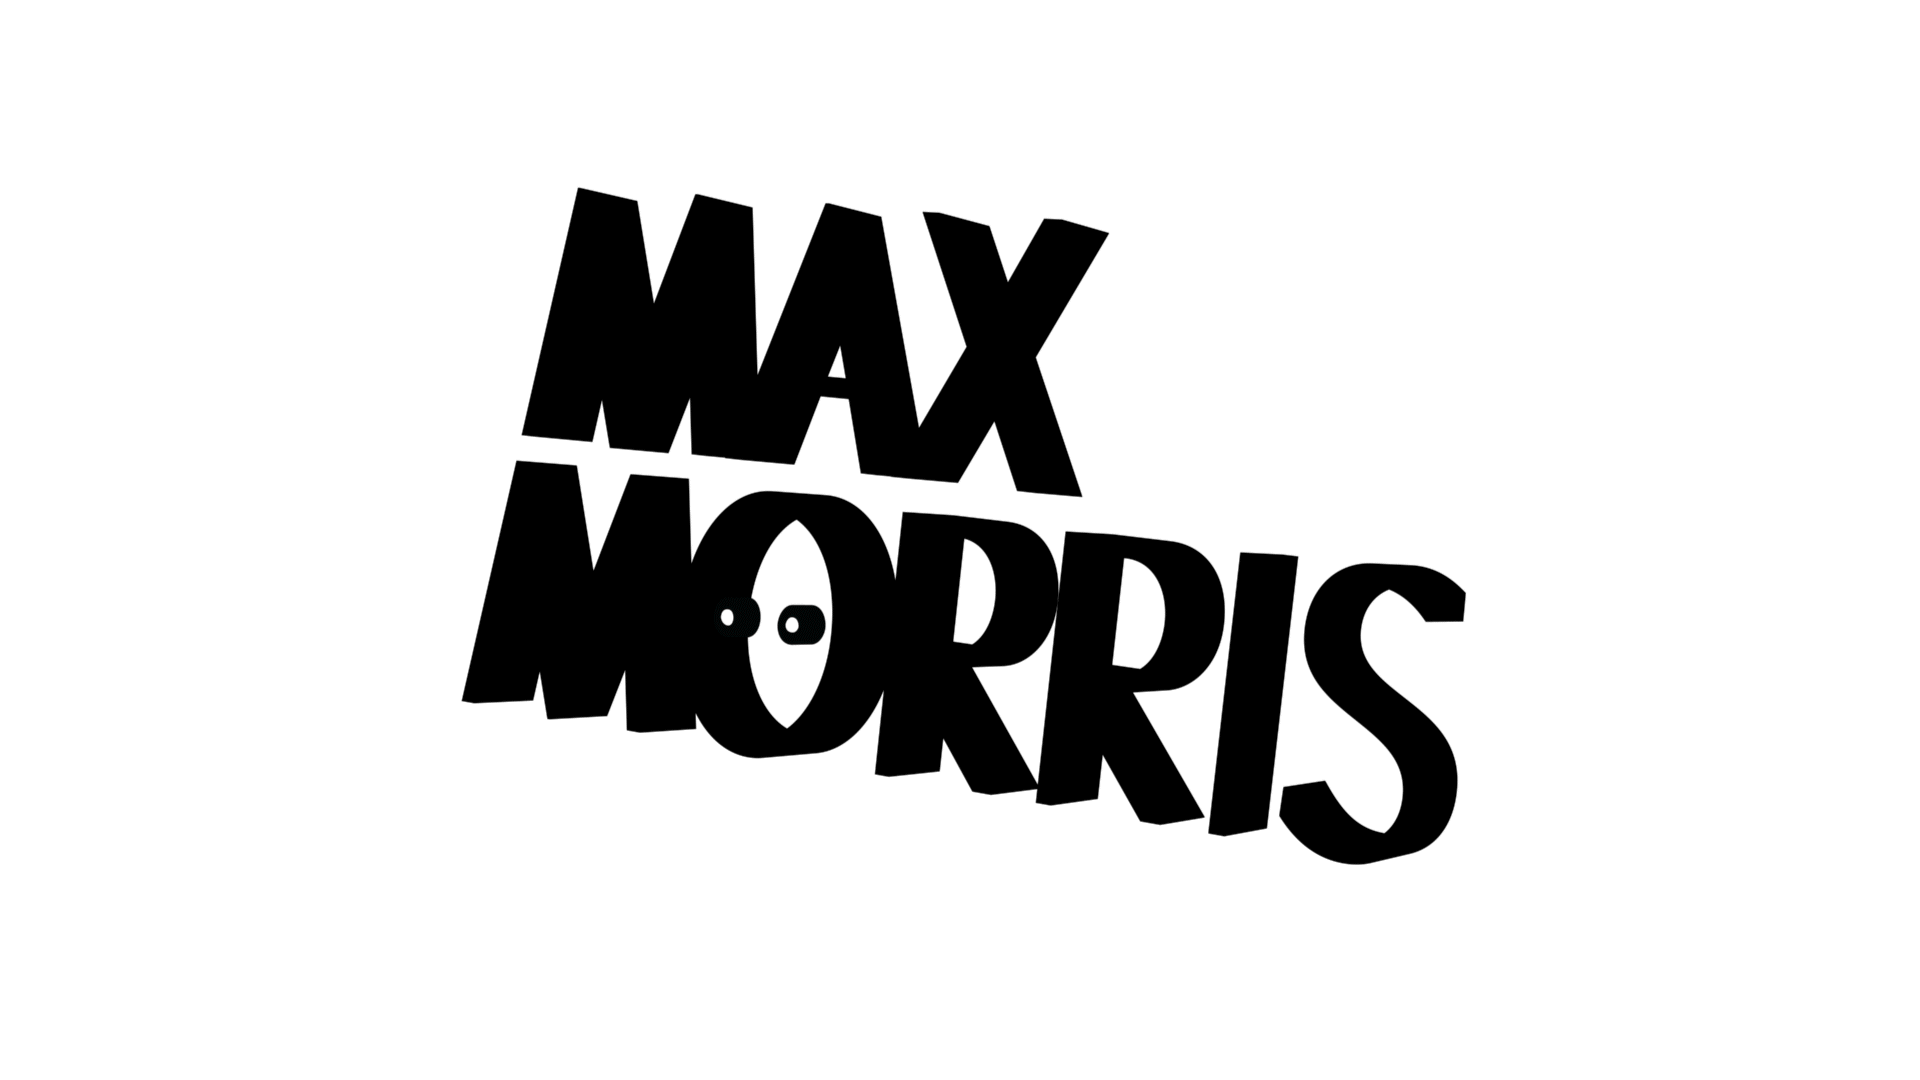 Max Morris-Doherty